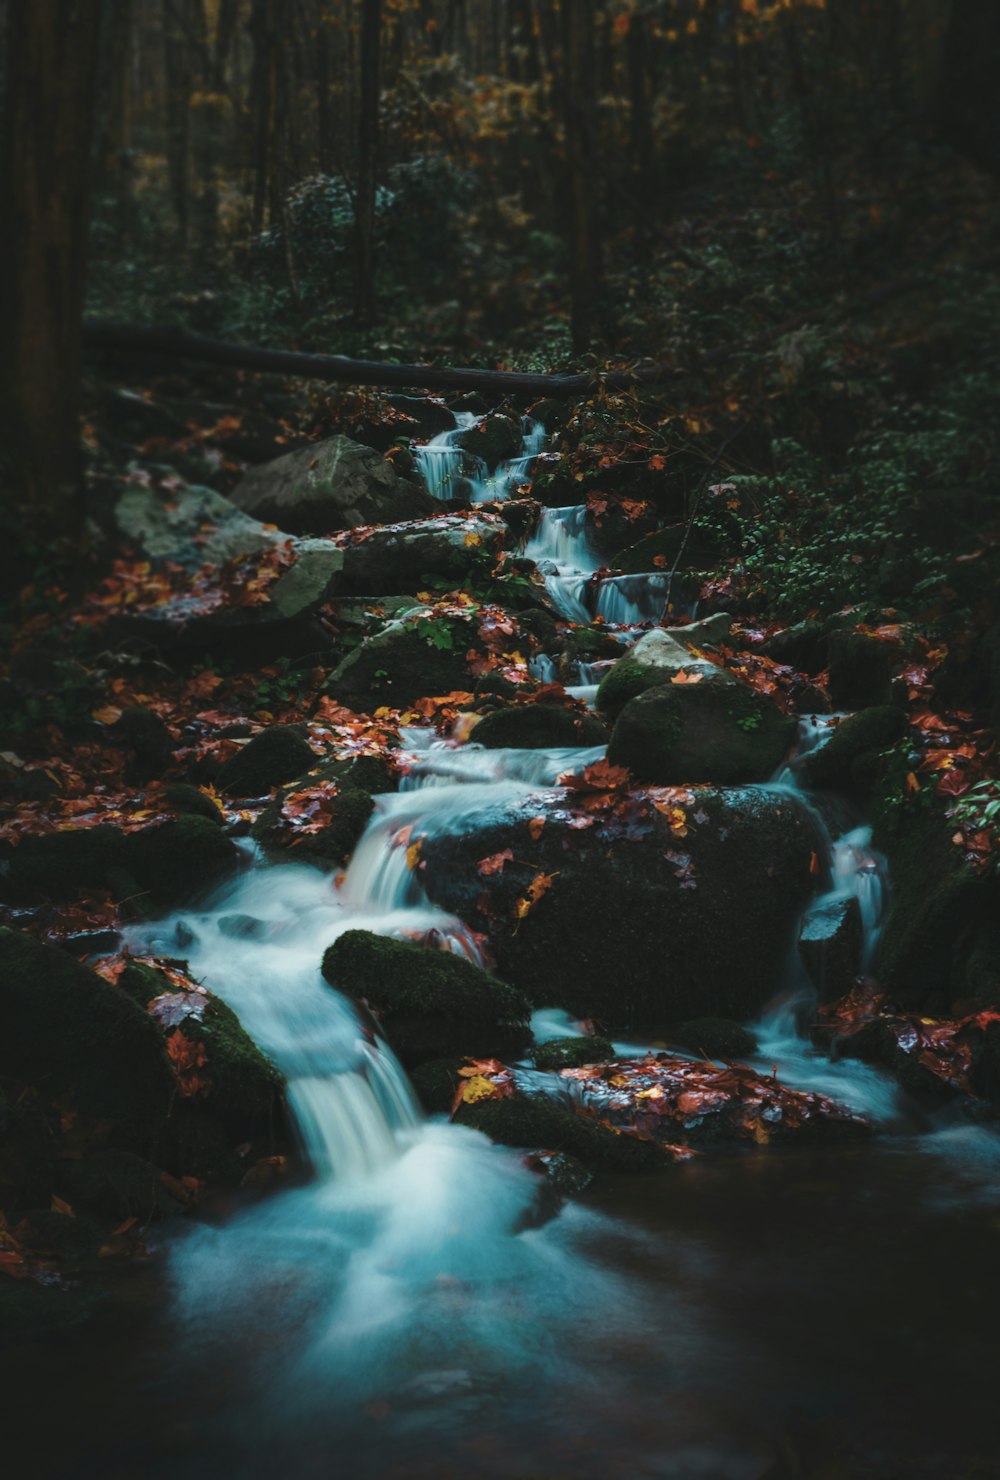 acqua che scorre sulle rocce nella foresta durante il giorno